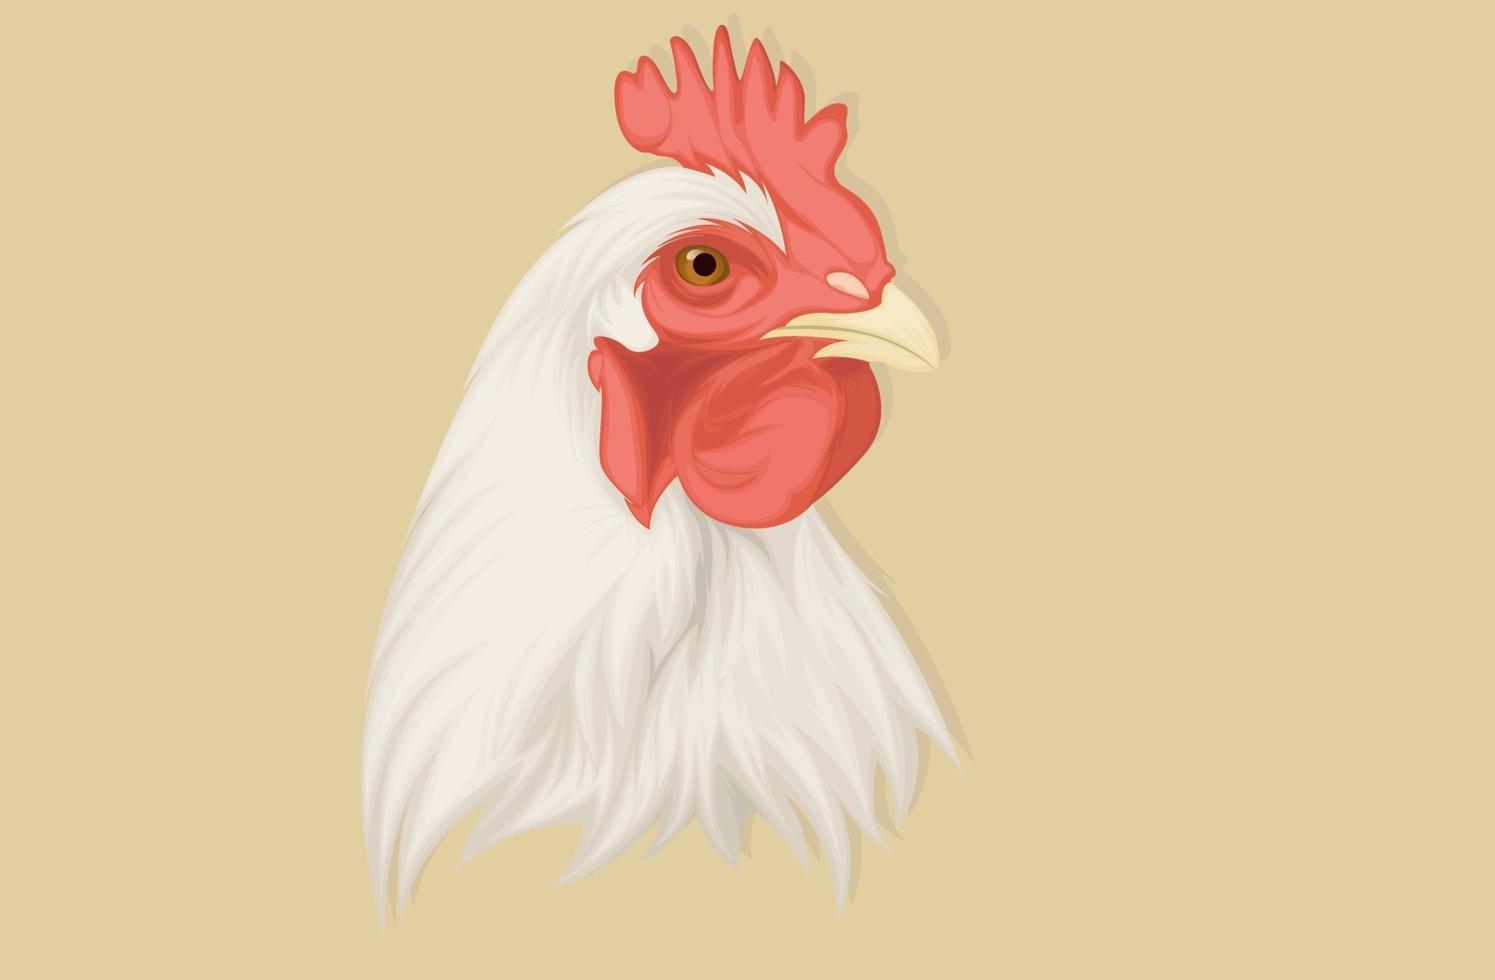 realistisk kycklingillustration handritning vektor